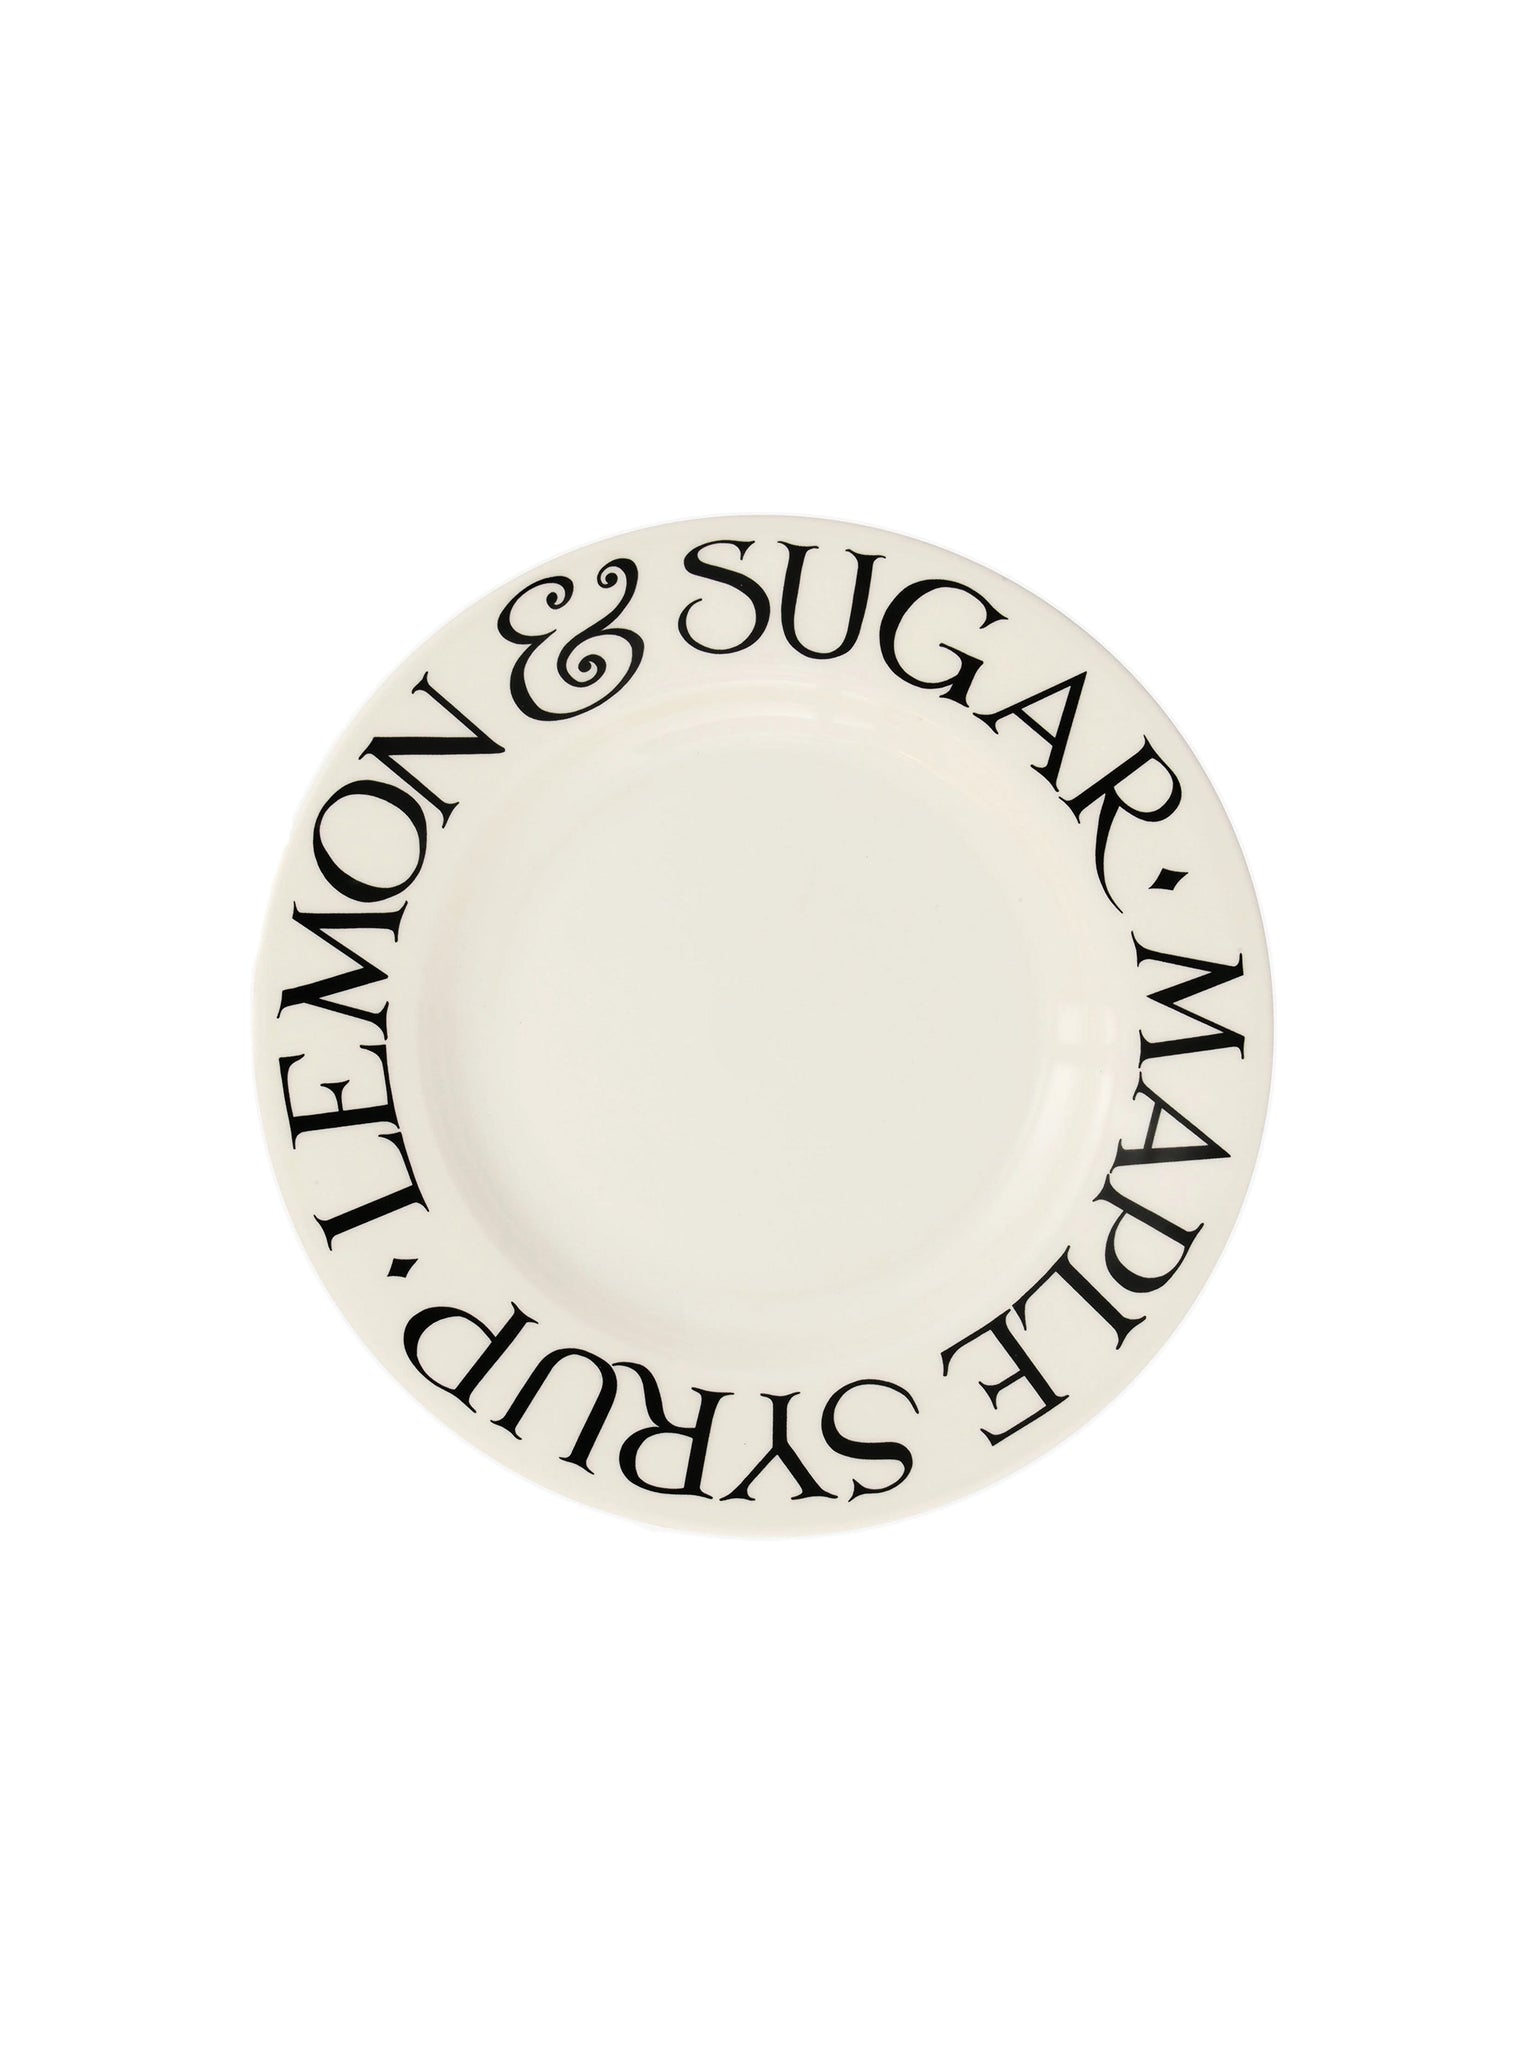 Emma Bridgewater Black Toast Lemon & Sugar 8.5 Inch Plate Weston Table